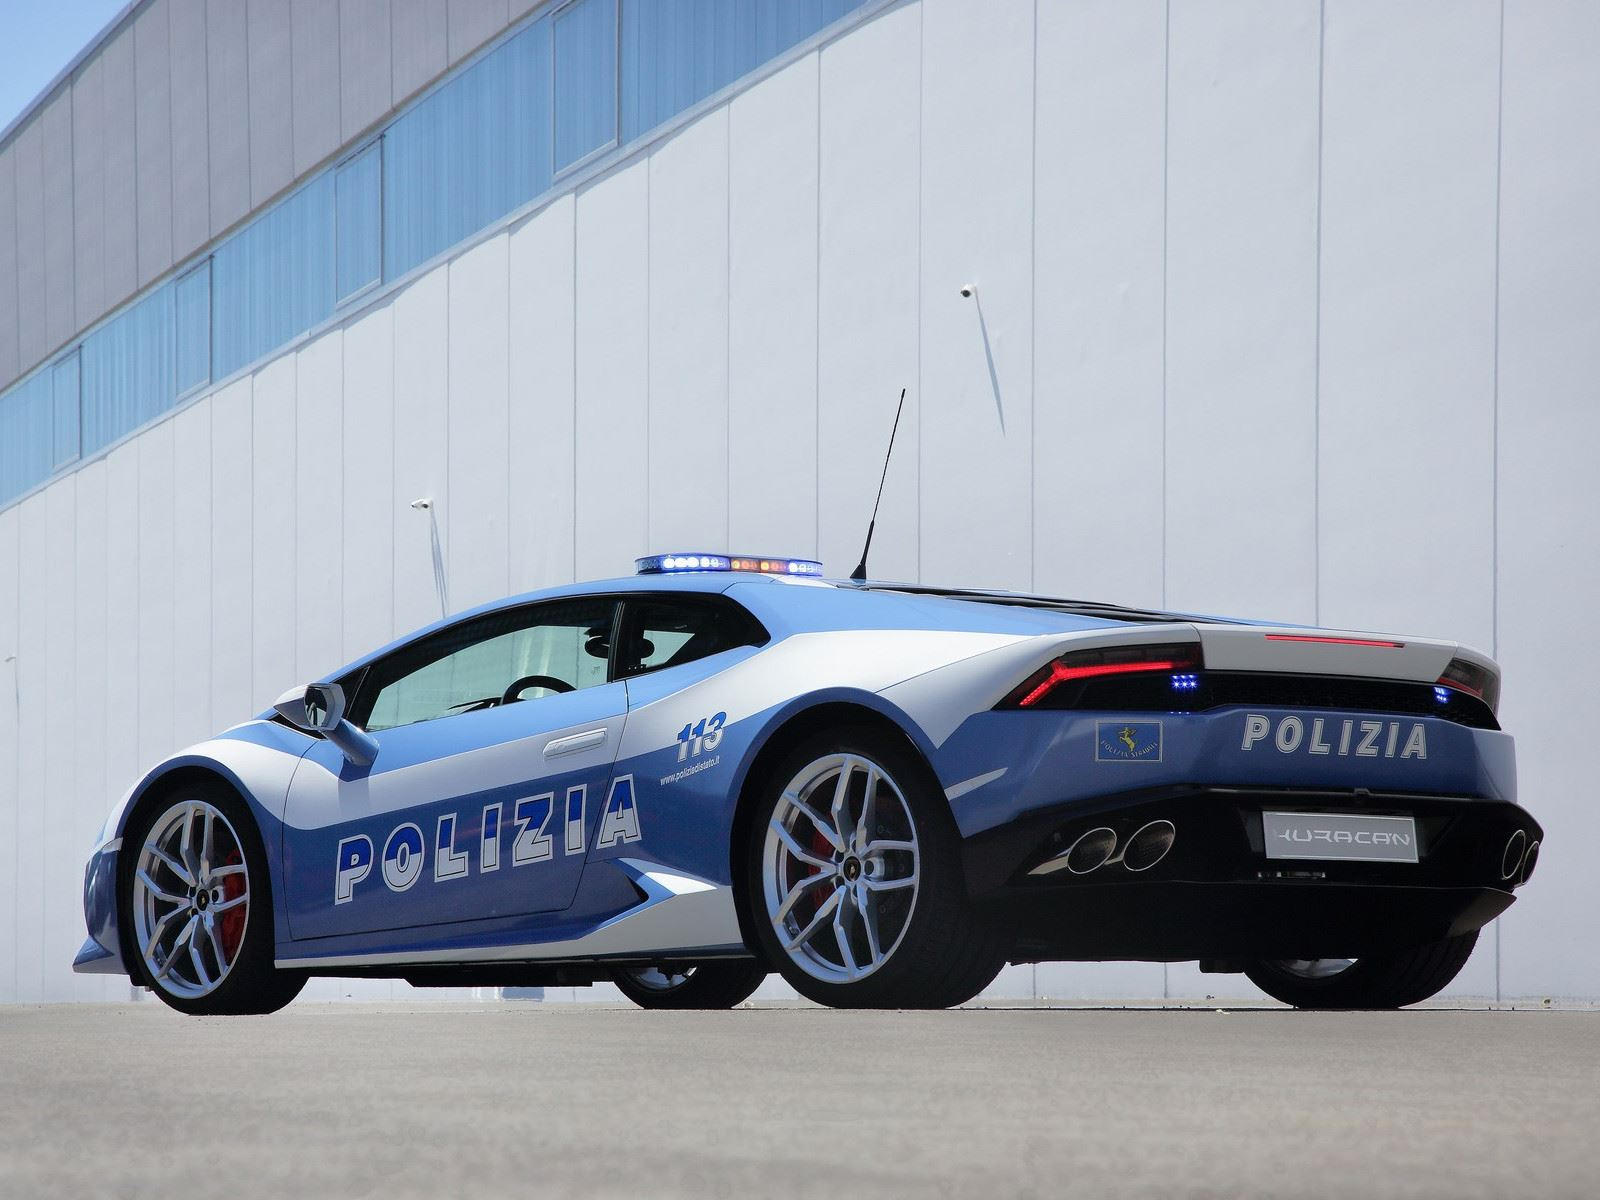 "بالصور" أكثر 10 سيارات شرطة تميزا حول العالم 9